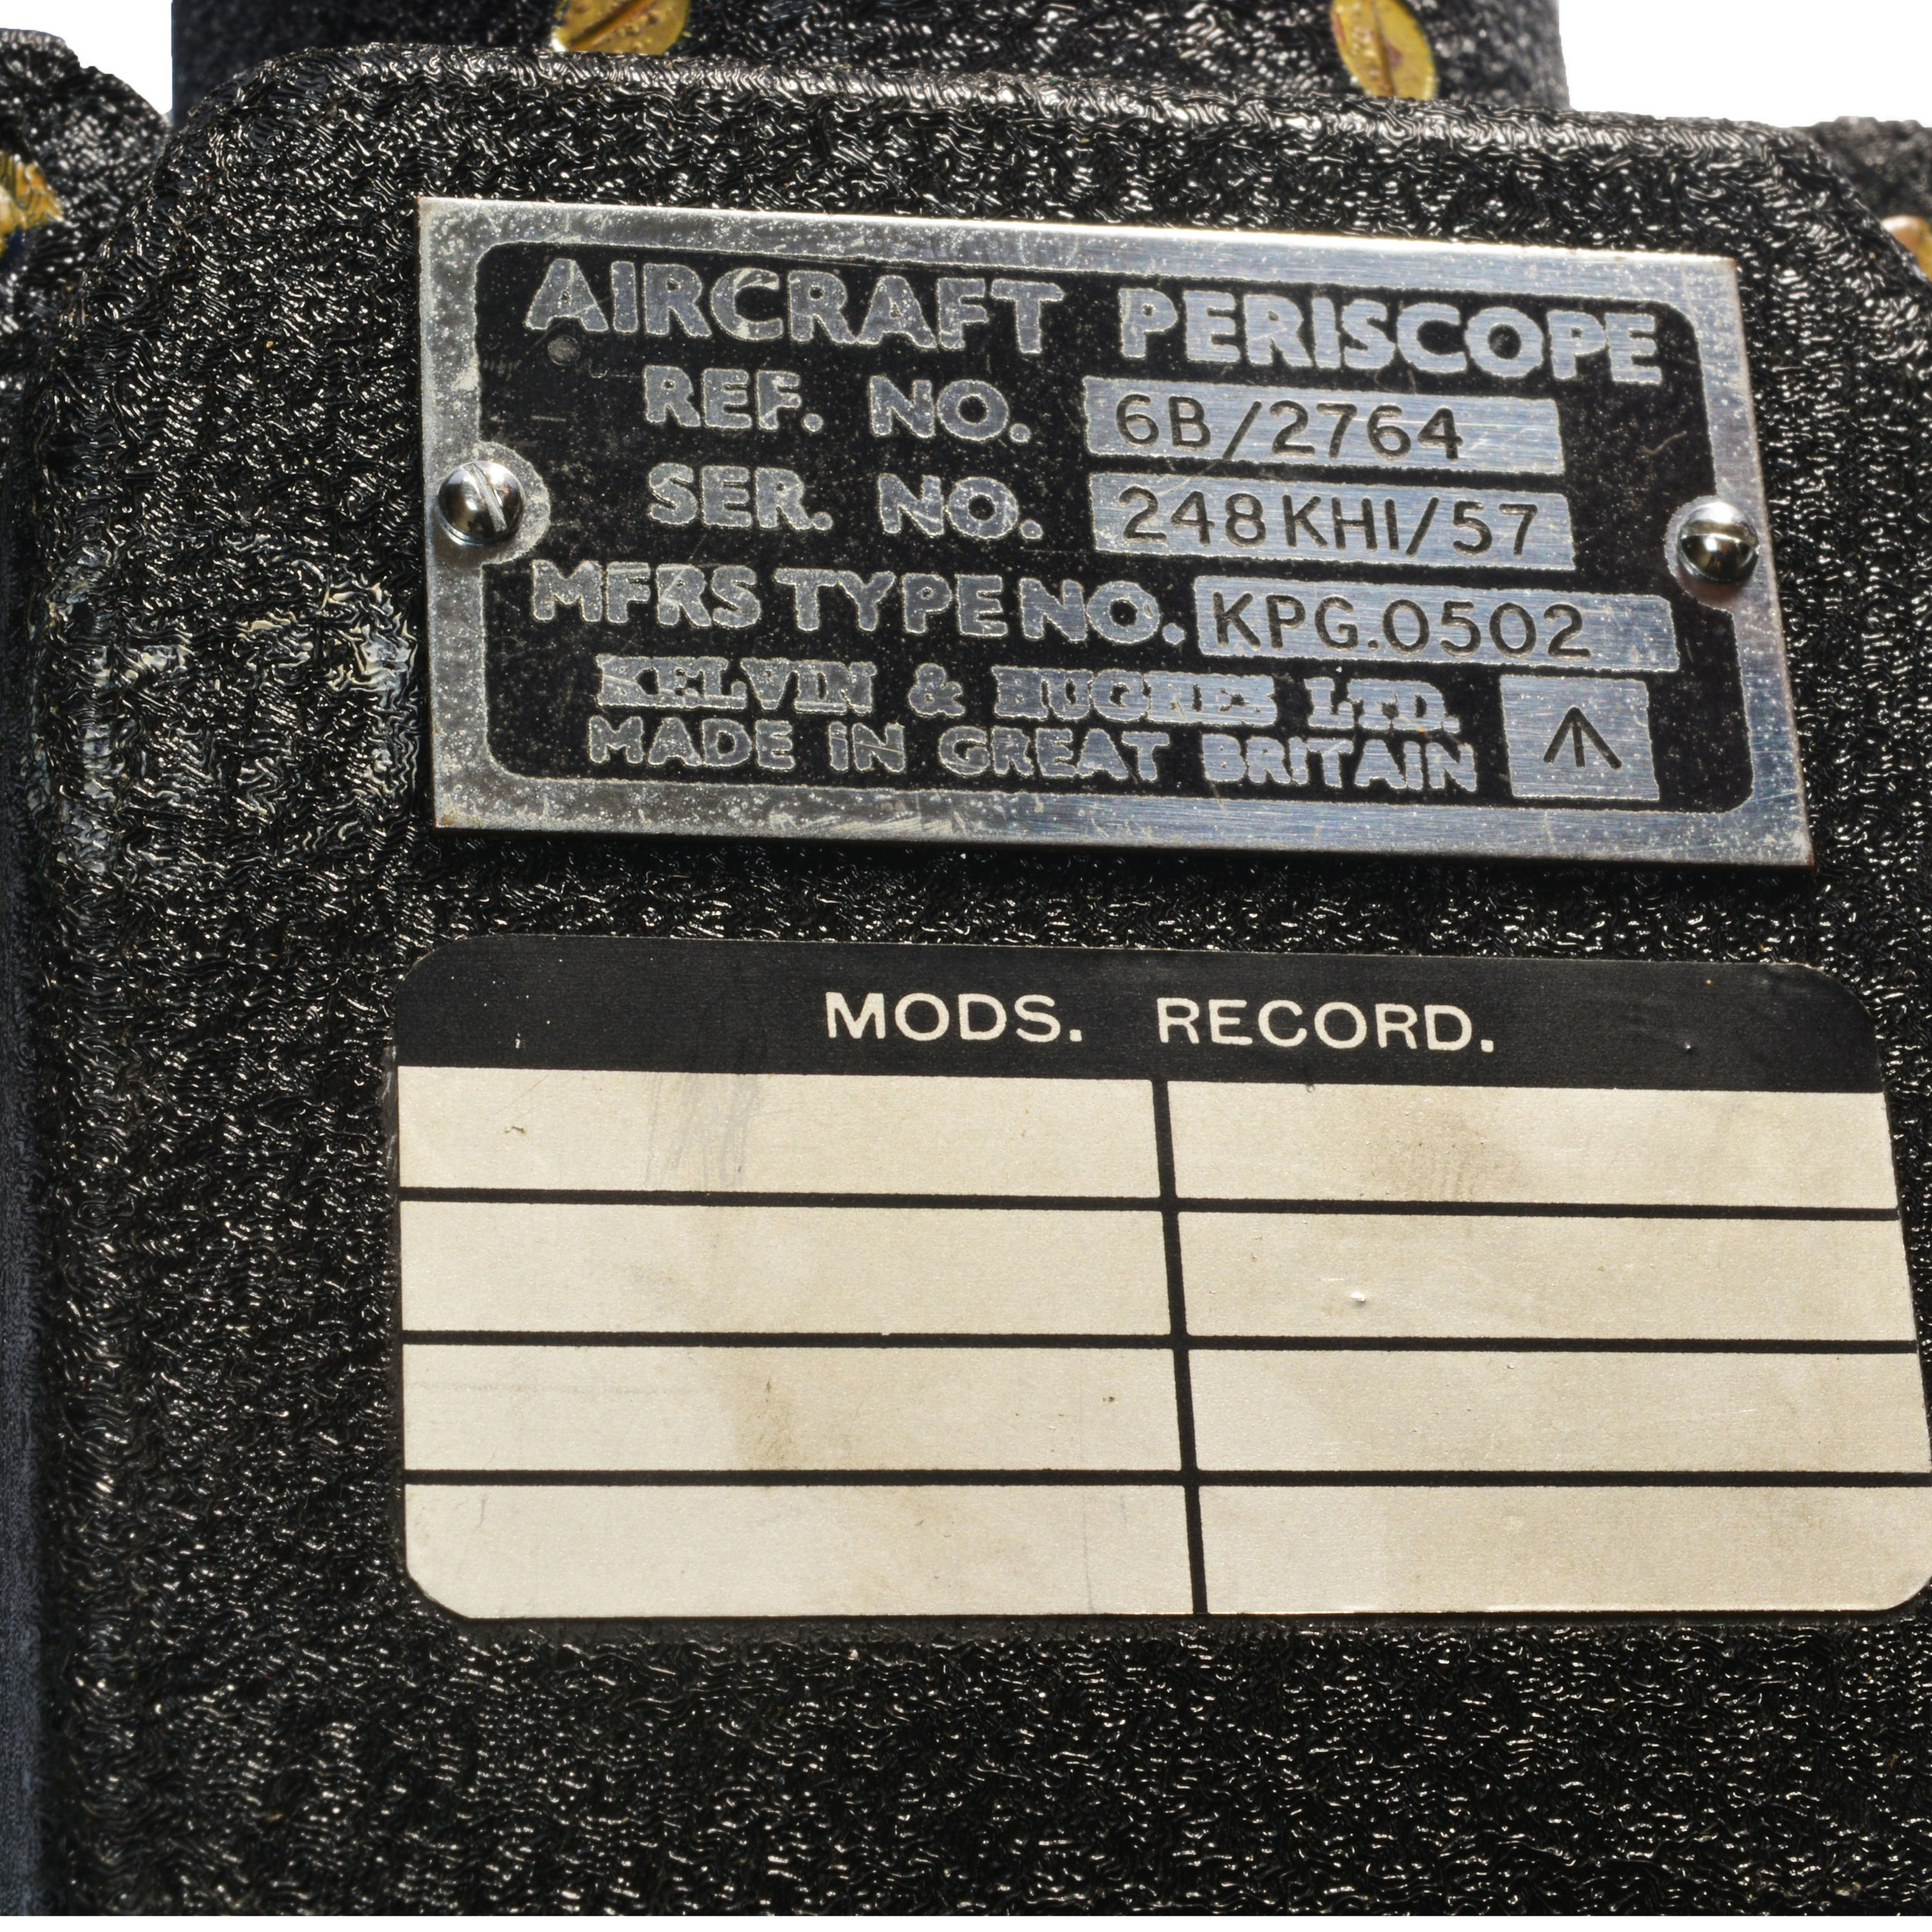 RAF Aircraft Periscope maker's plate